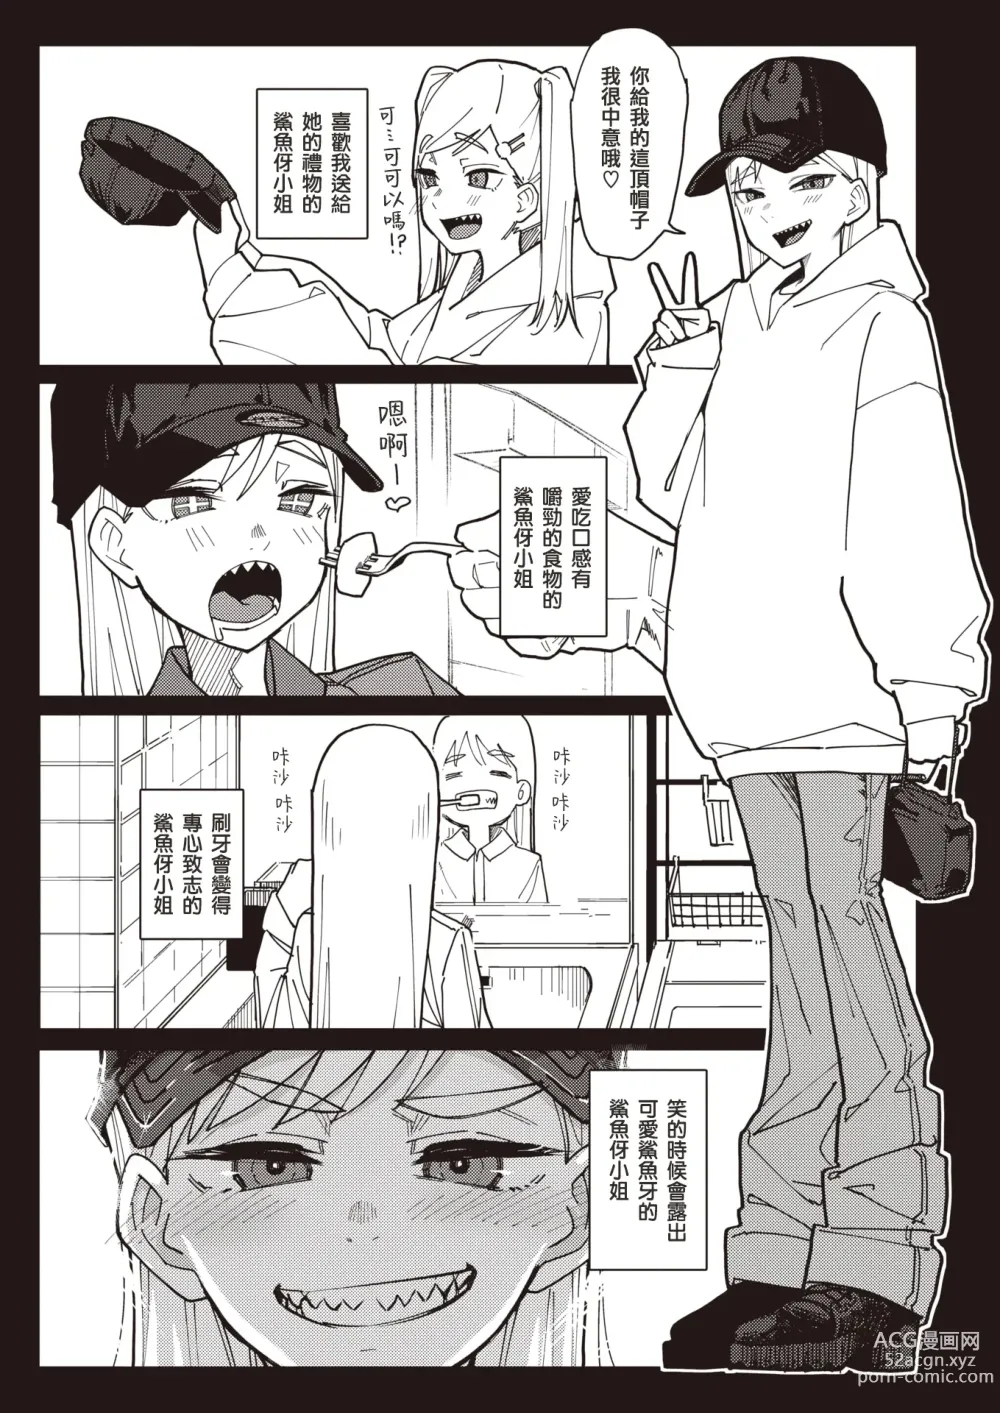 Page 4 of manga 牙齒凹凸不平的鯊魚伢小姐